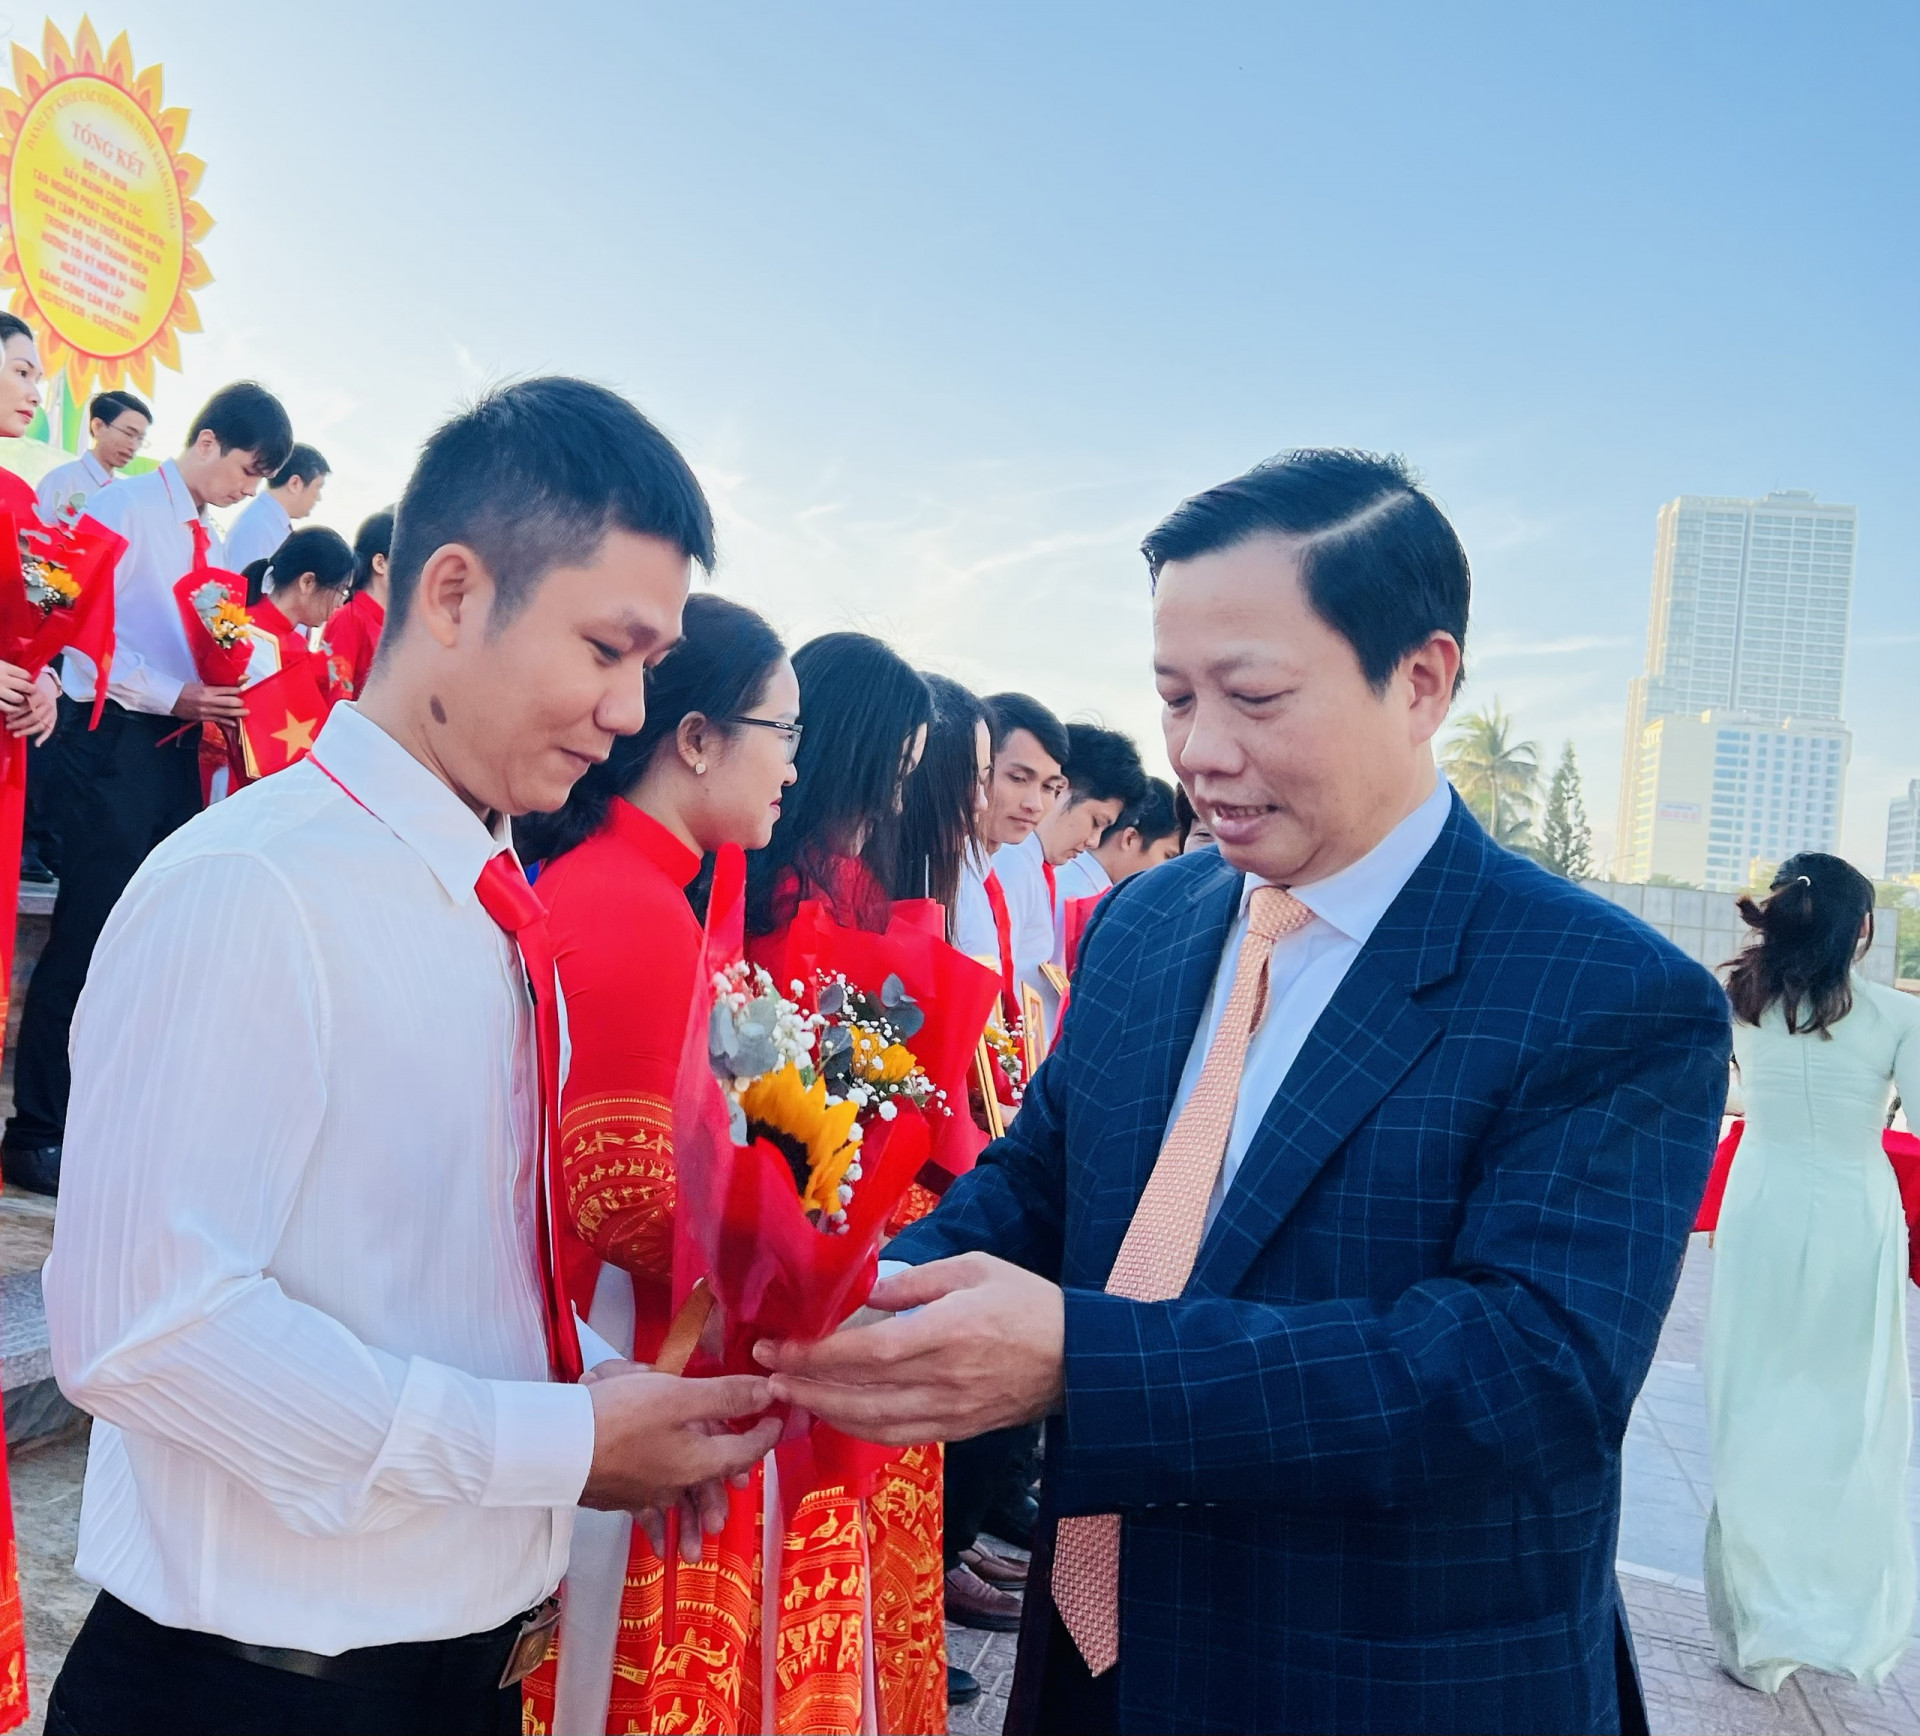 Phó Bí thư Tỉnh ủy Hà Quốc Trị tặng hoa chúc mừng các đảng viên vừa được kết nạp Đảng trong đợt chào mừng 94 năm ngày thành lập Đảng Cộng sản Việt Nam.